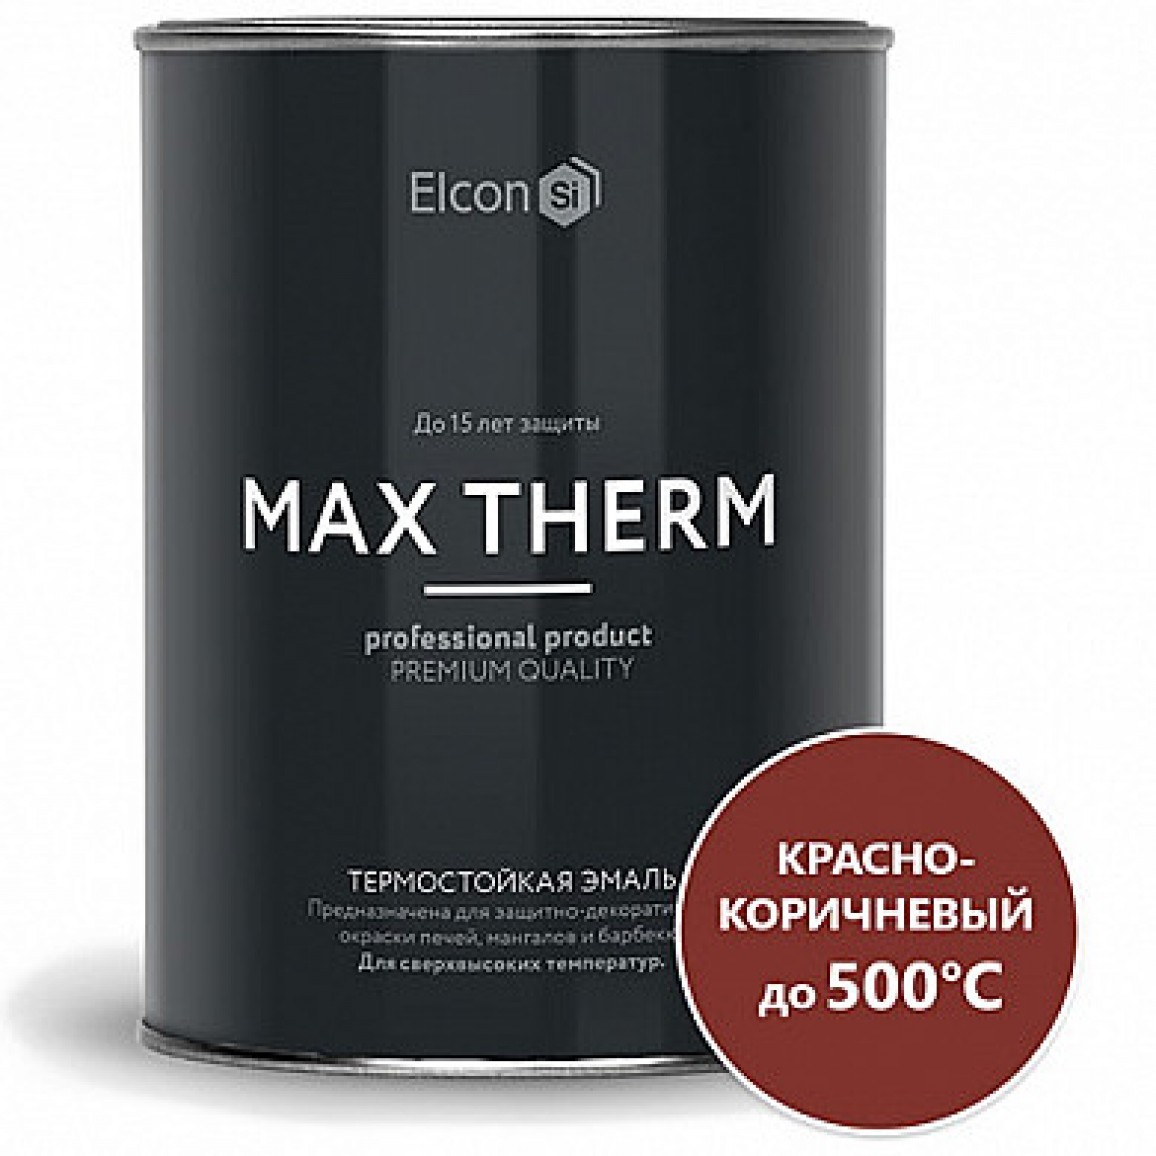 Elcon Эмаль термостойкая +700 красно-коричневая, 0,8 кг.